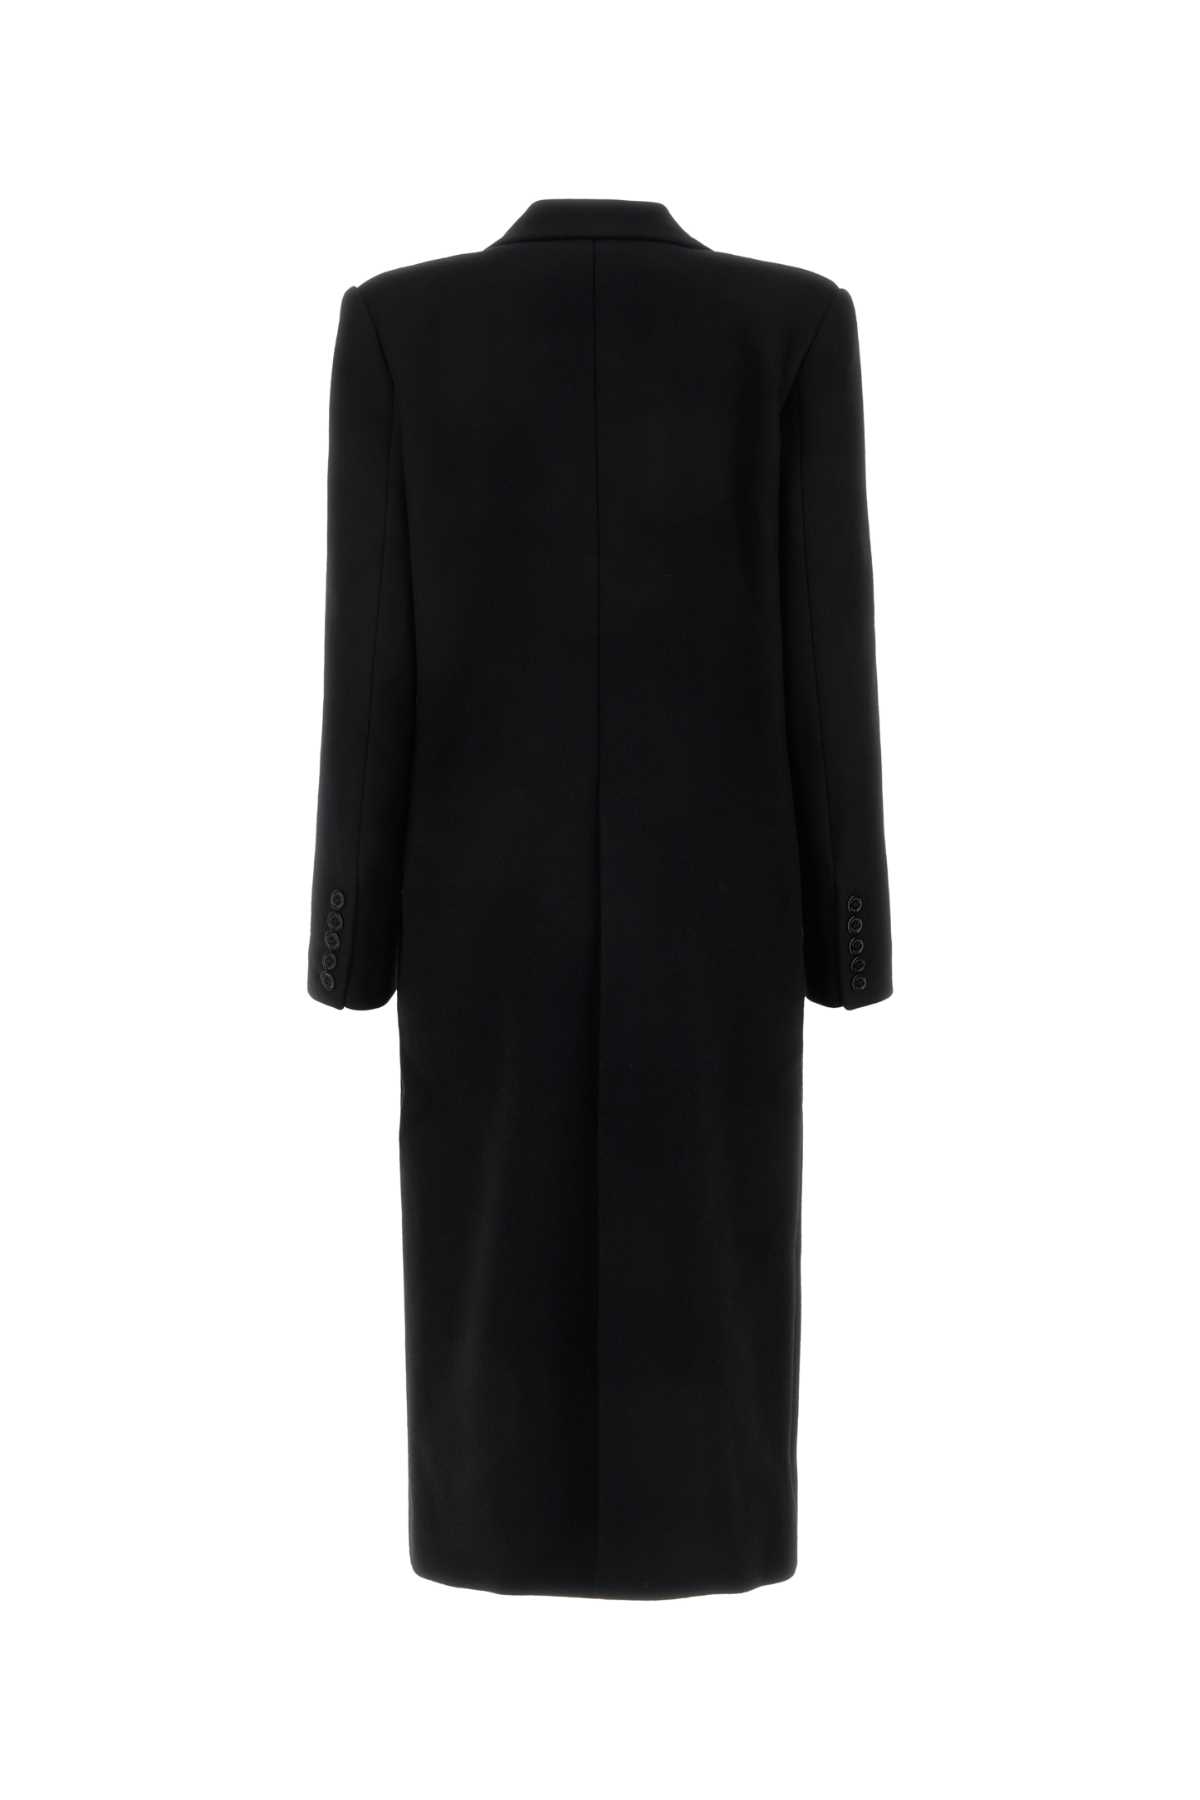 Shop Alexandre Vauthier Black Wool Blend Coat